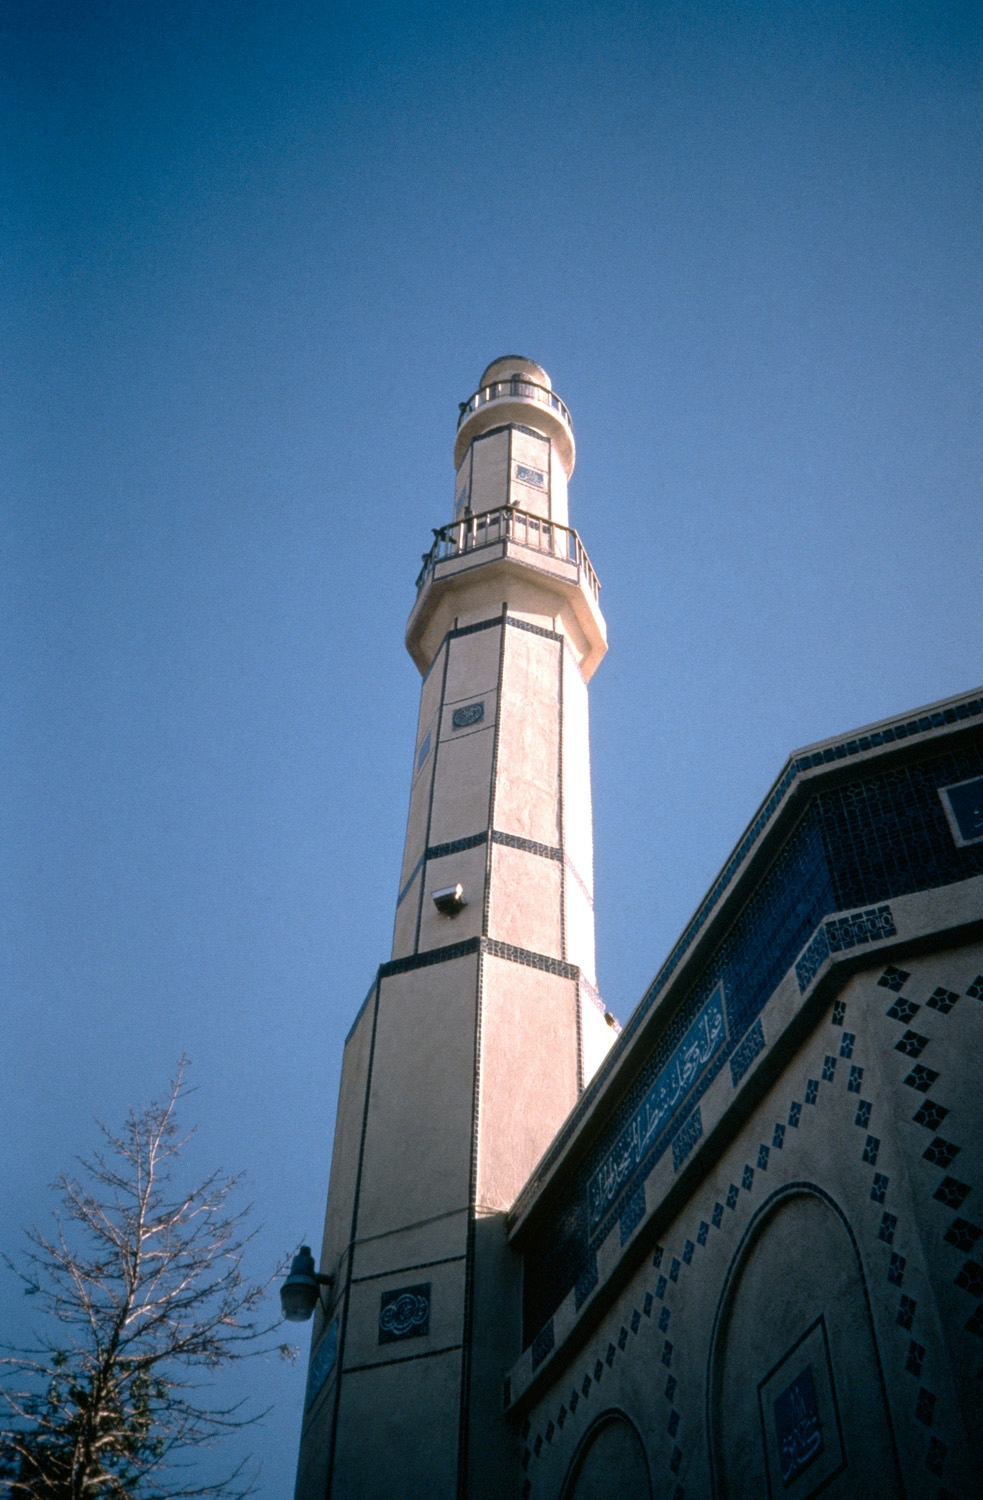 Upwards view of minaret